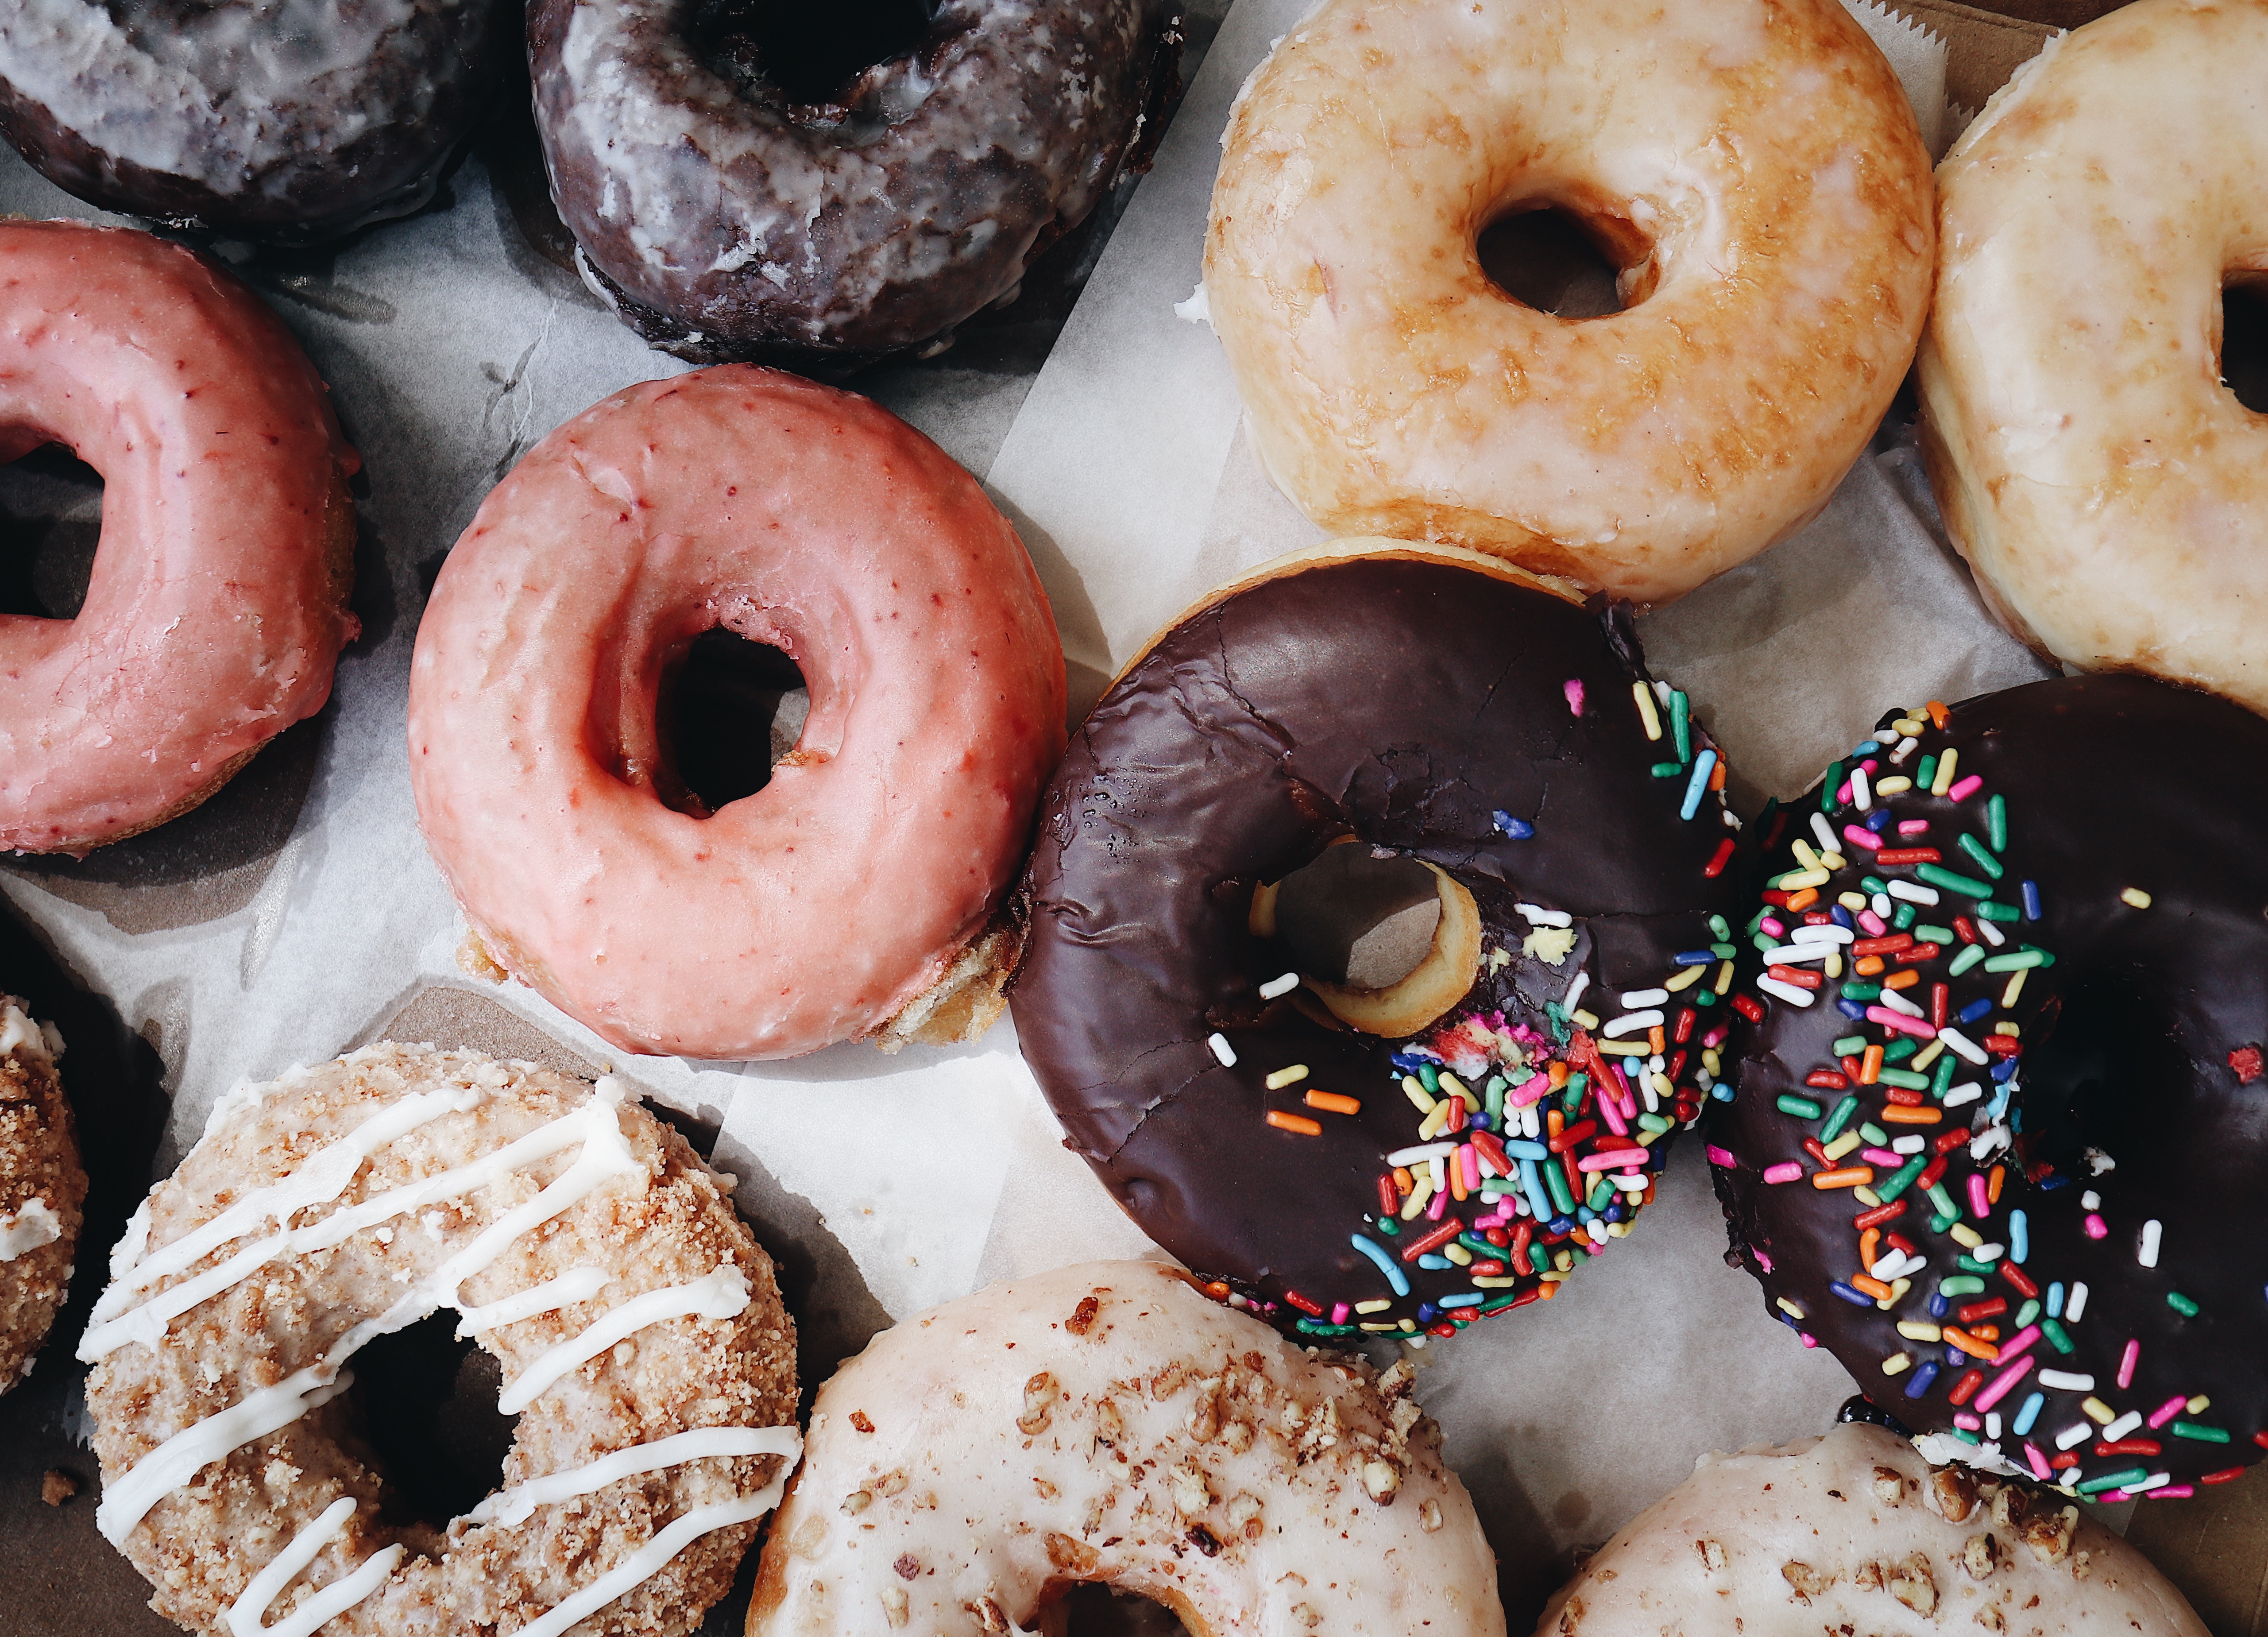 An assortment of doughnuts